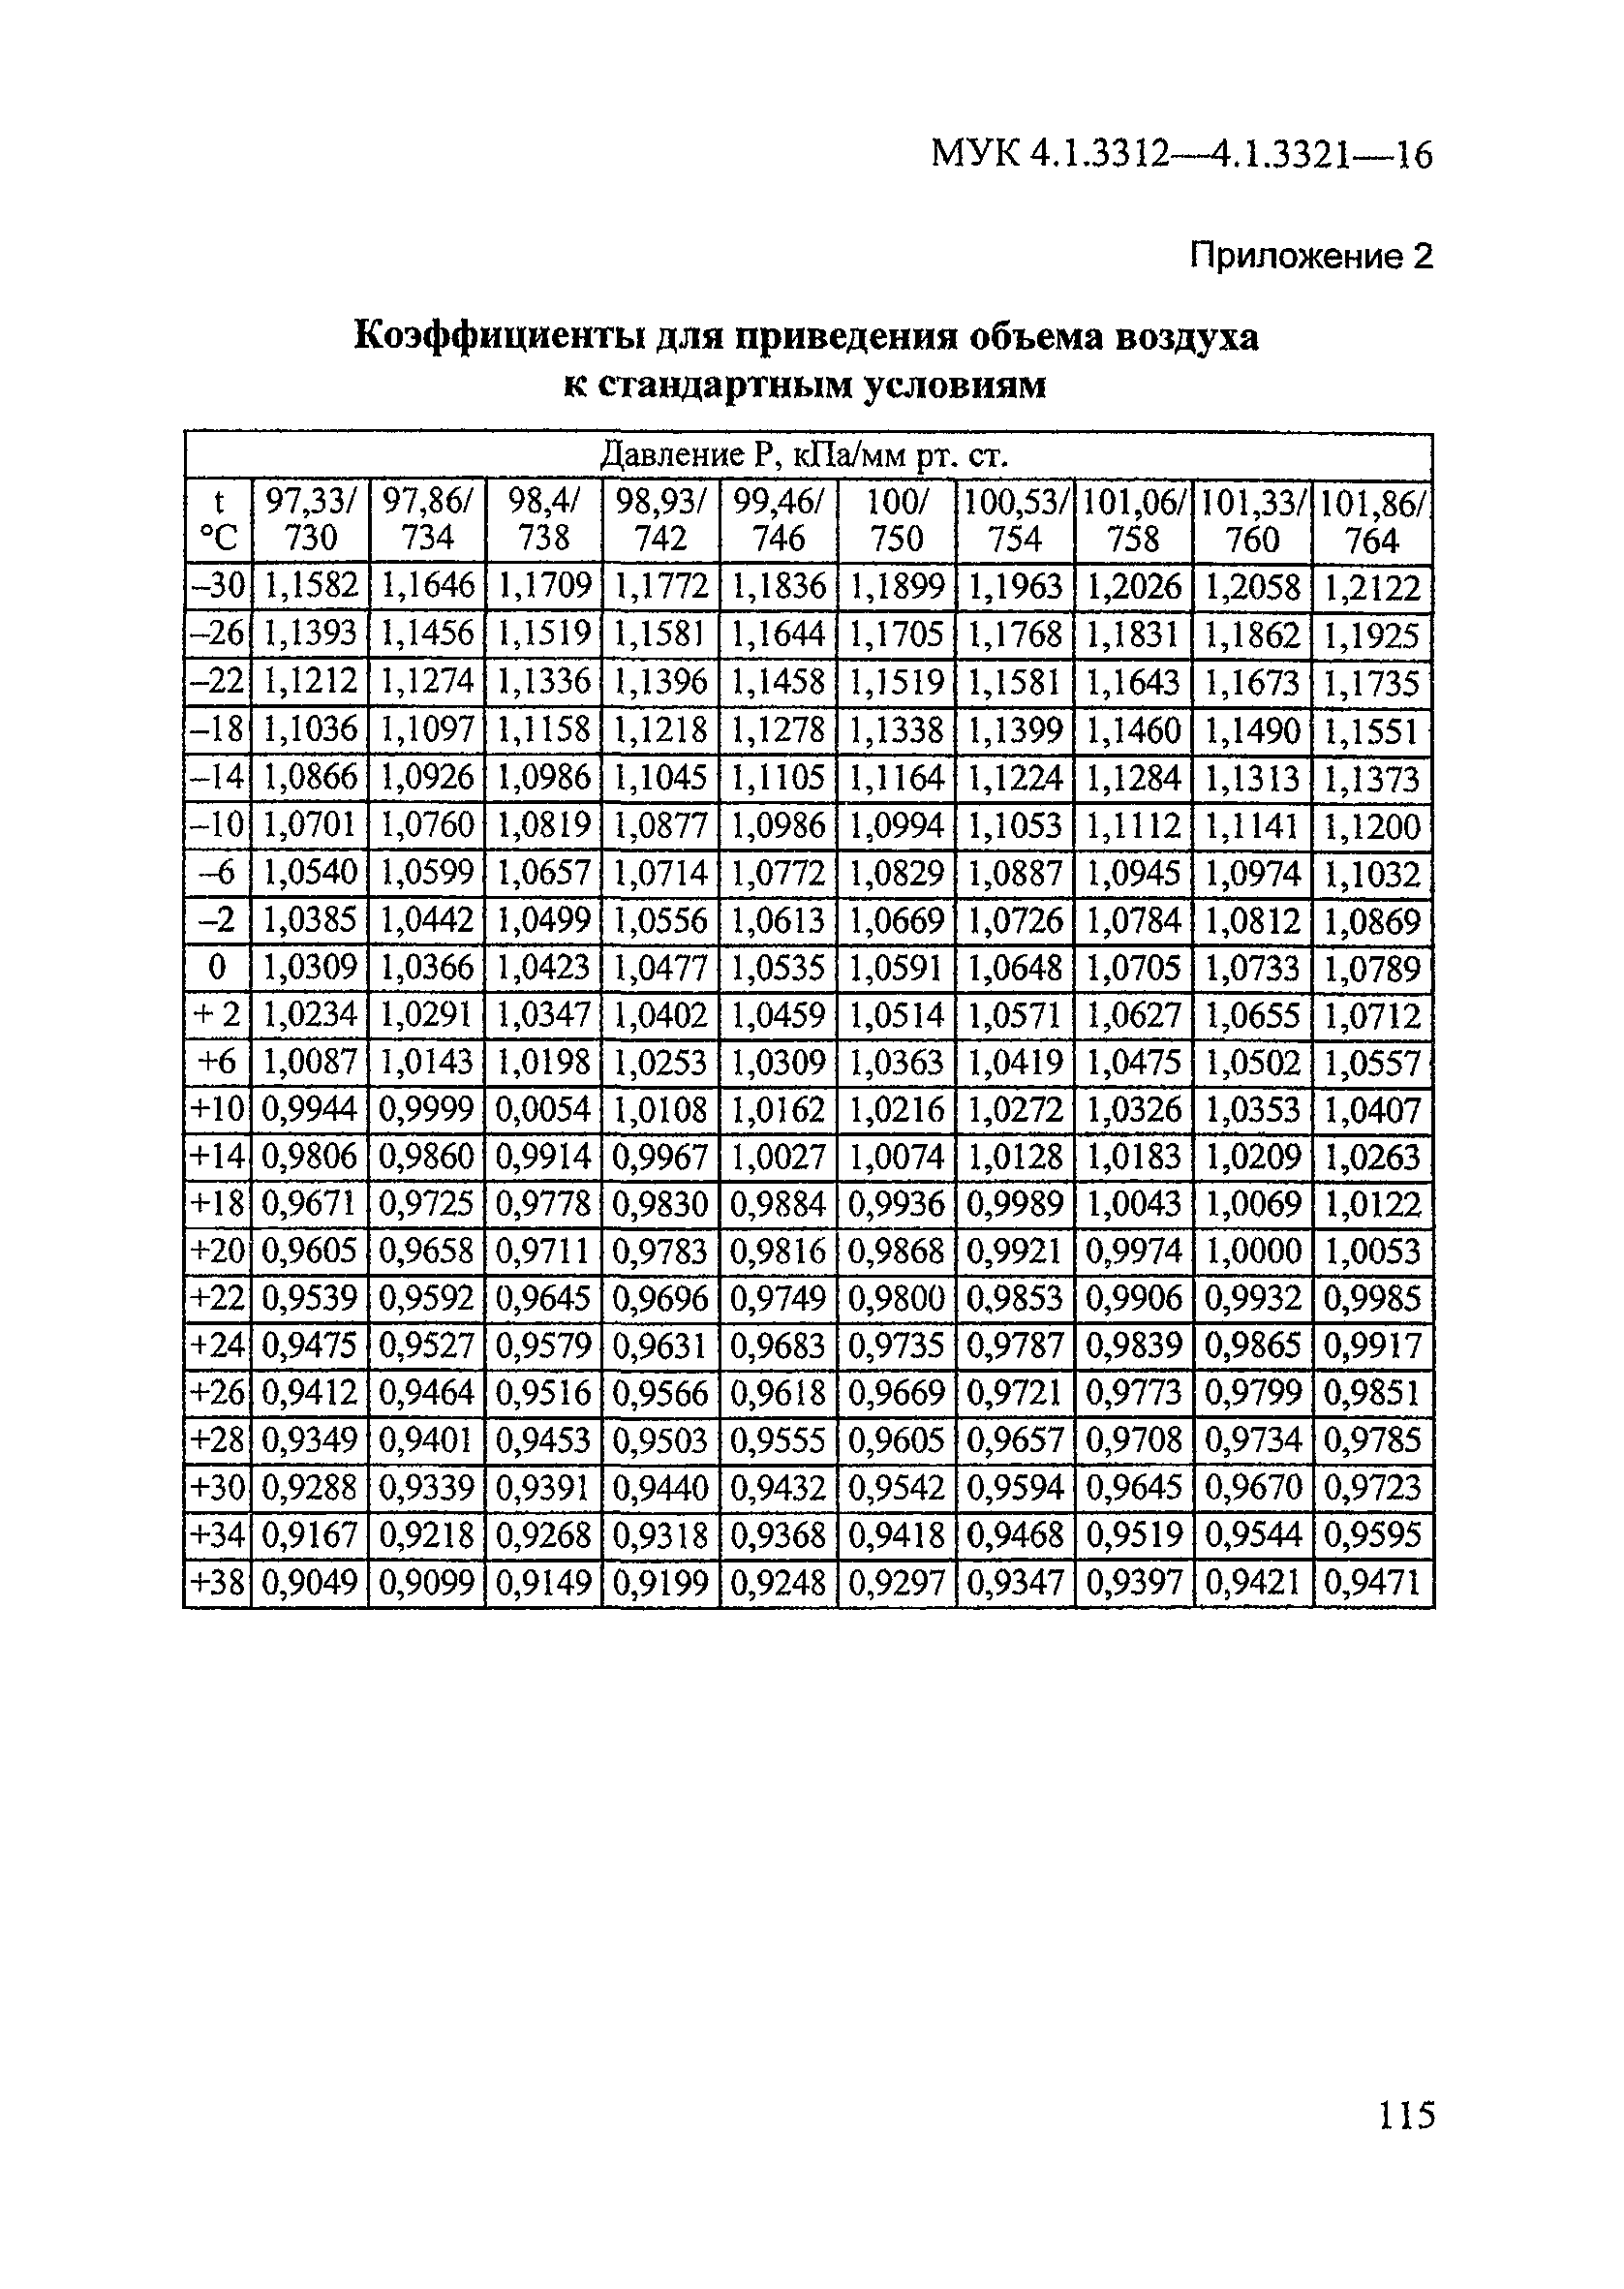 МУК 4.1.3317-15